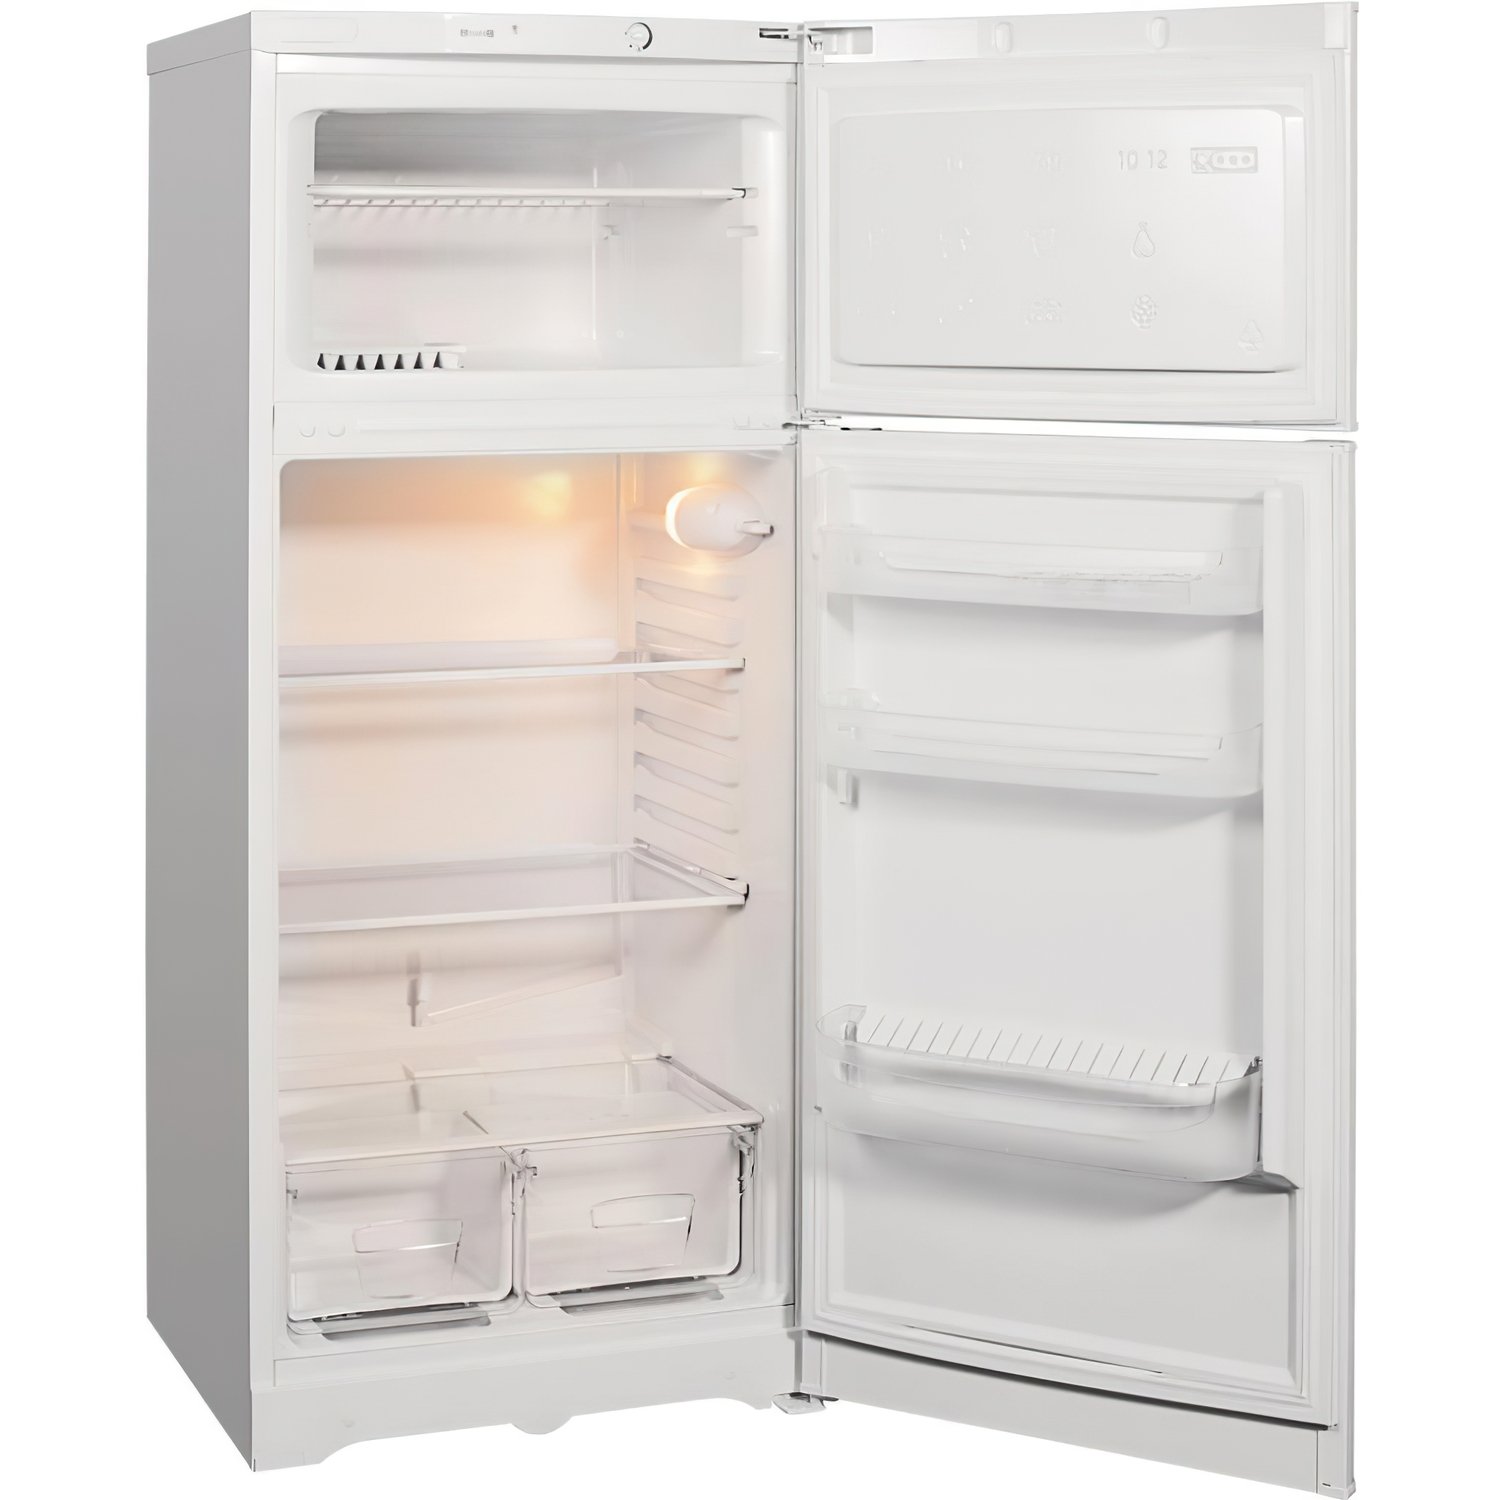 Холодильник Индезит: общие сведения